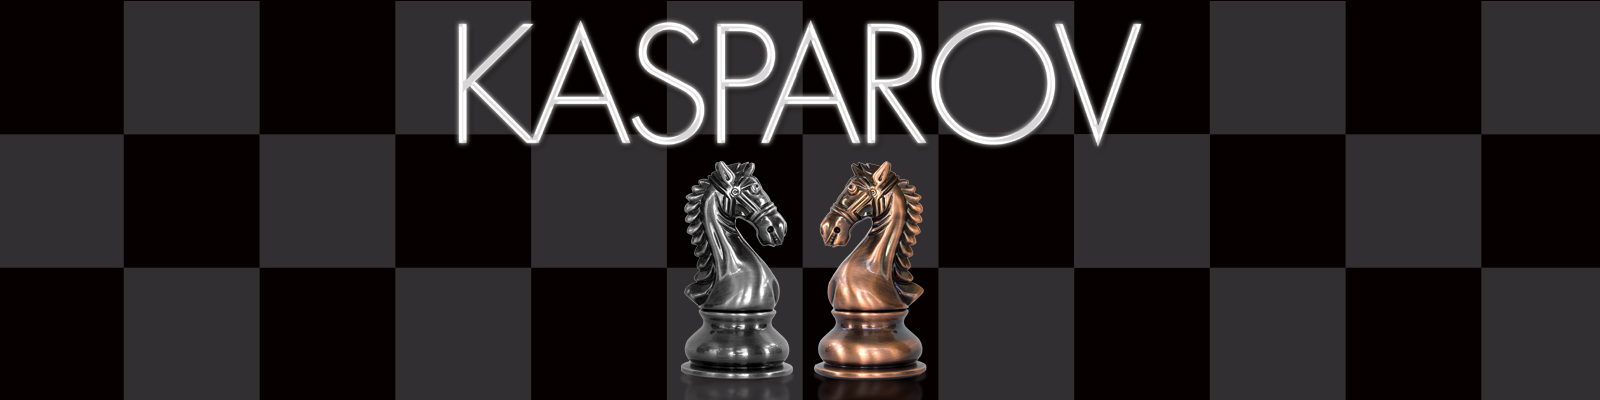 garry kasparov chess friends